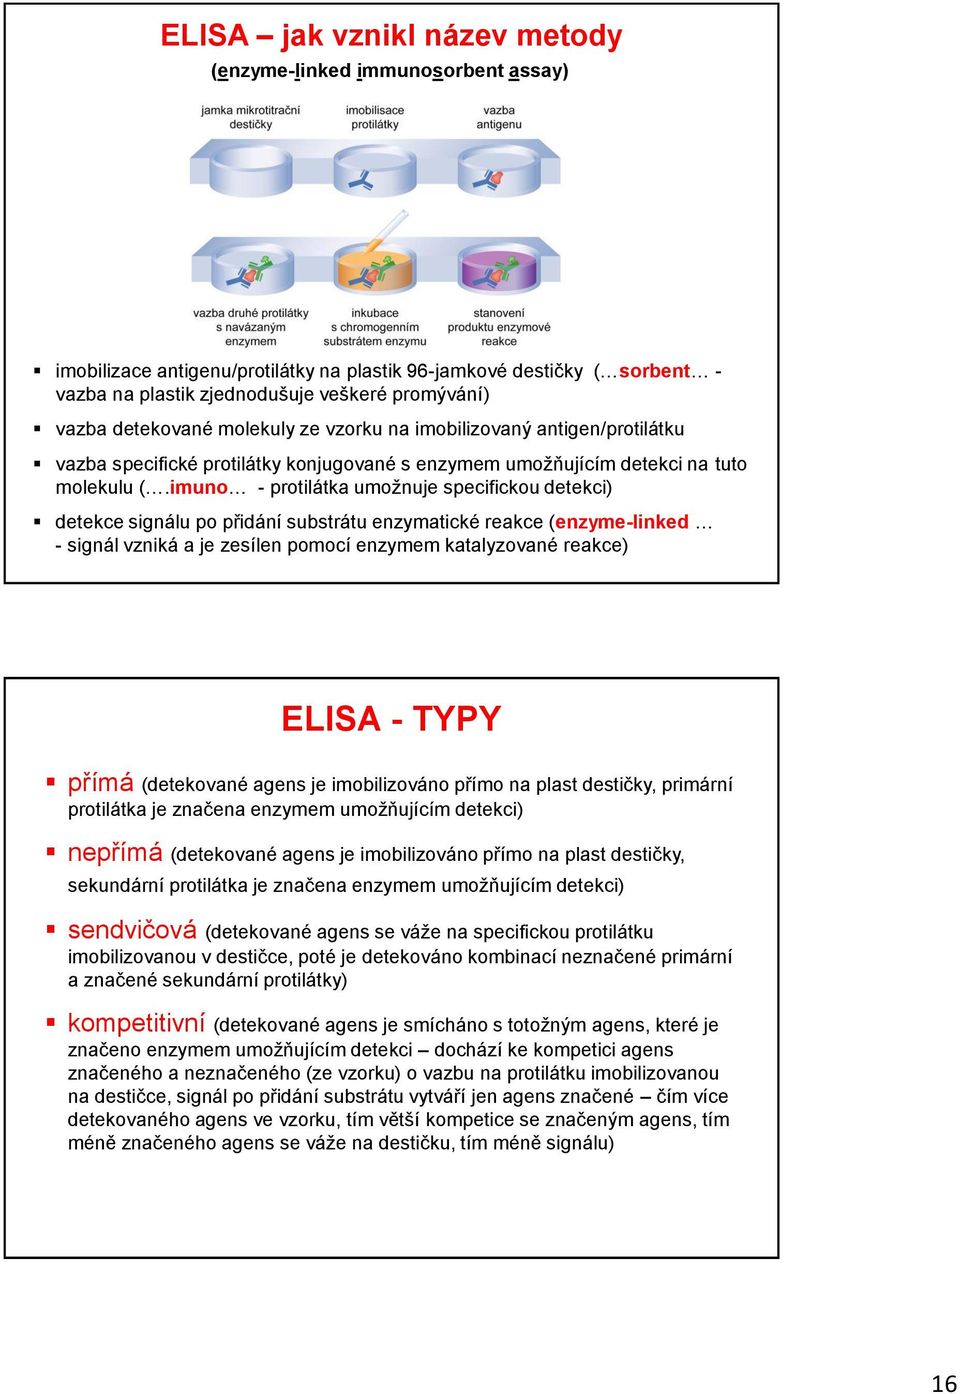 imuno - protilátka umožnuje specifickou detekci) detekce signálu po přidání substrátu enzymatické reakce (enzyme-linked - signál vzniká a je zesílen pomocí enzymem katalyzované reakce) ELISA - TYPY